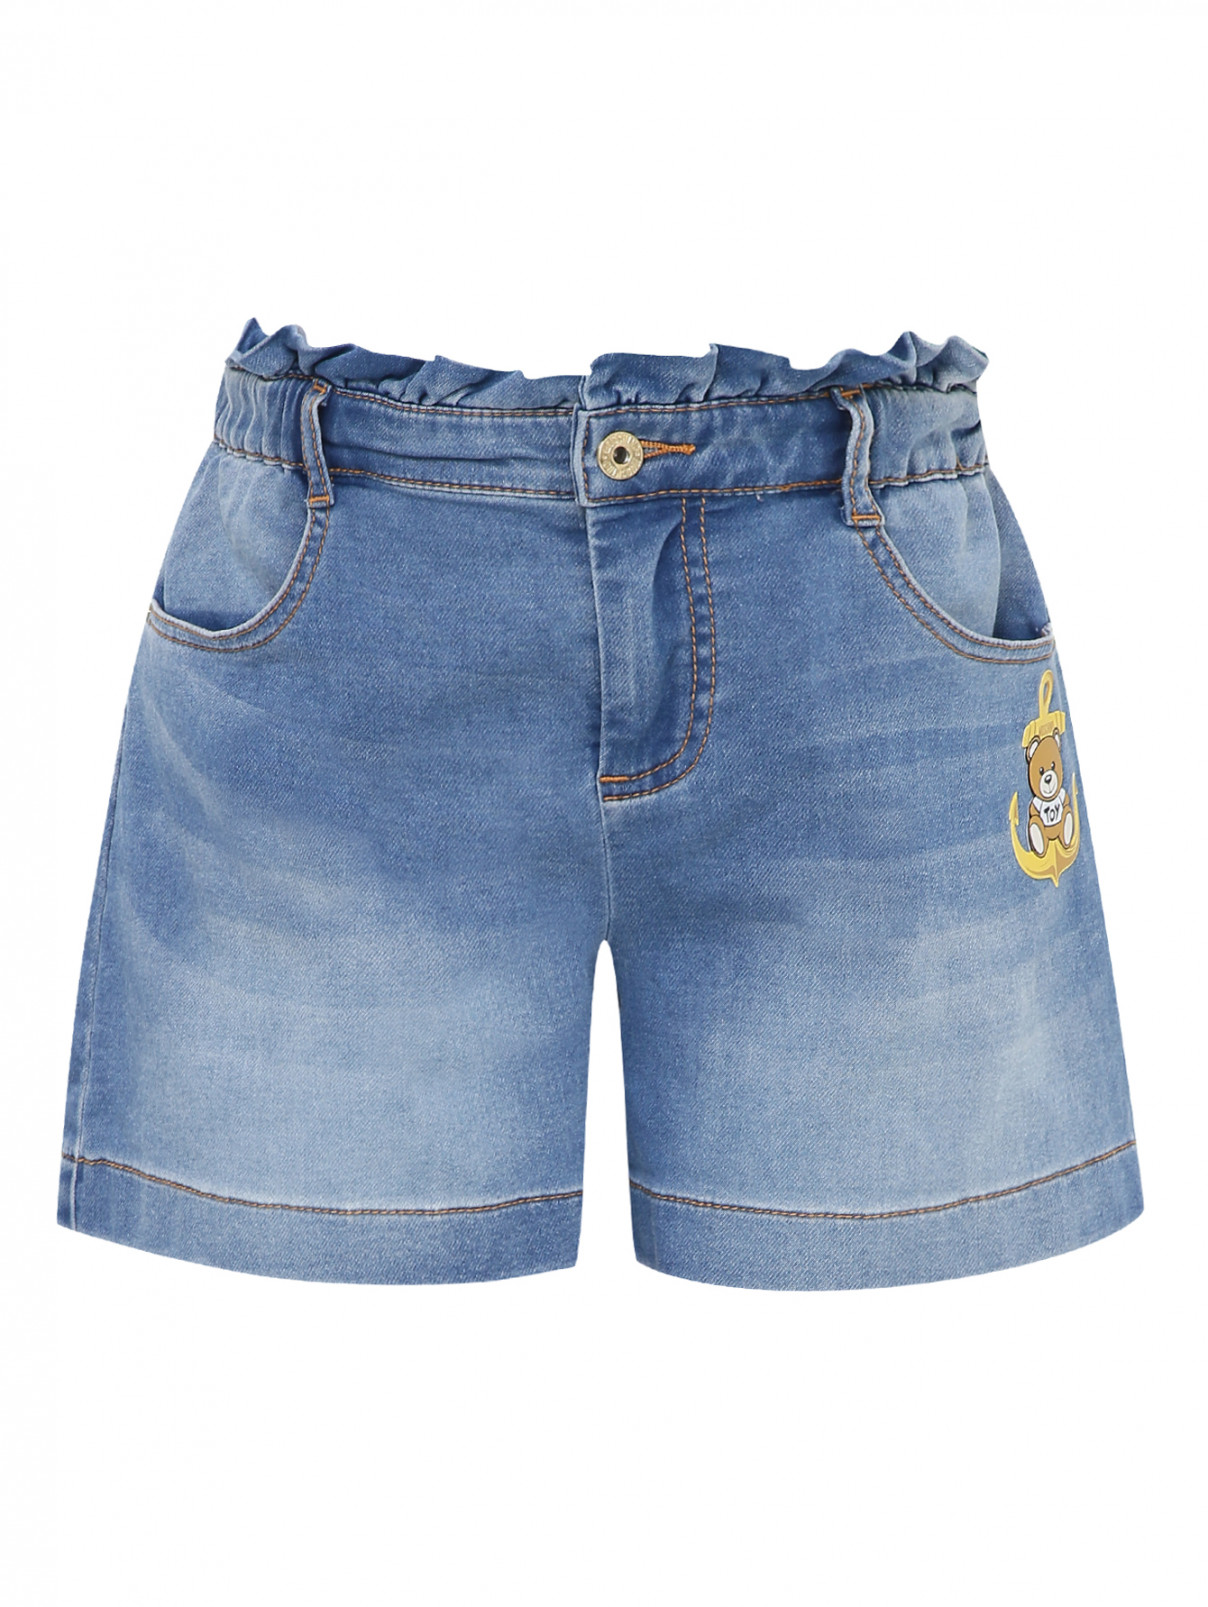 Шорты джинсовые с аппликацией Moschino Kid  –  Общий вид  – Цвет:  Синий